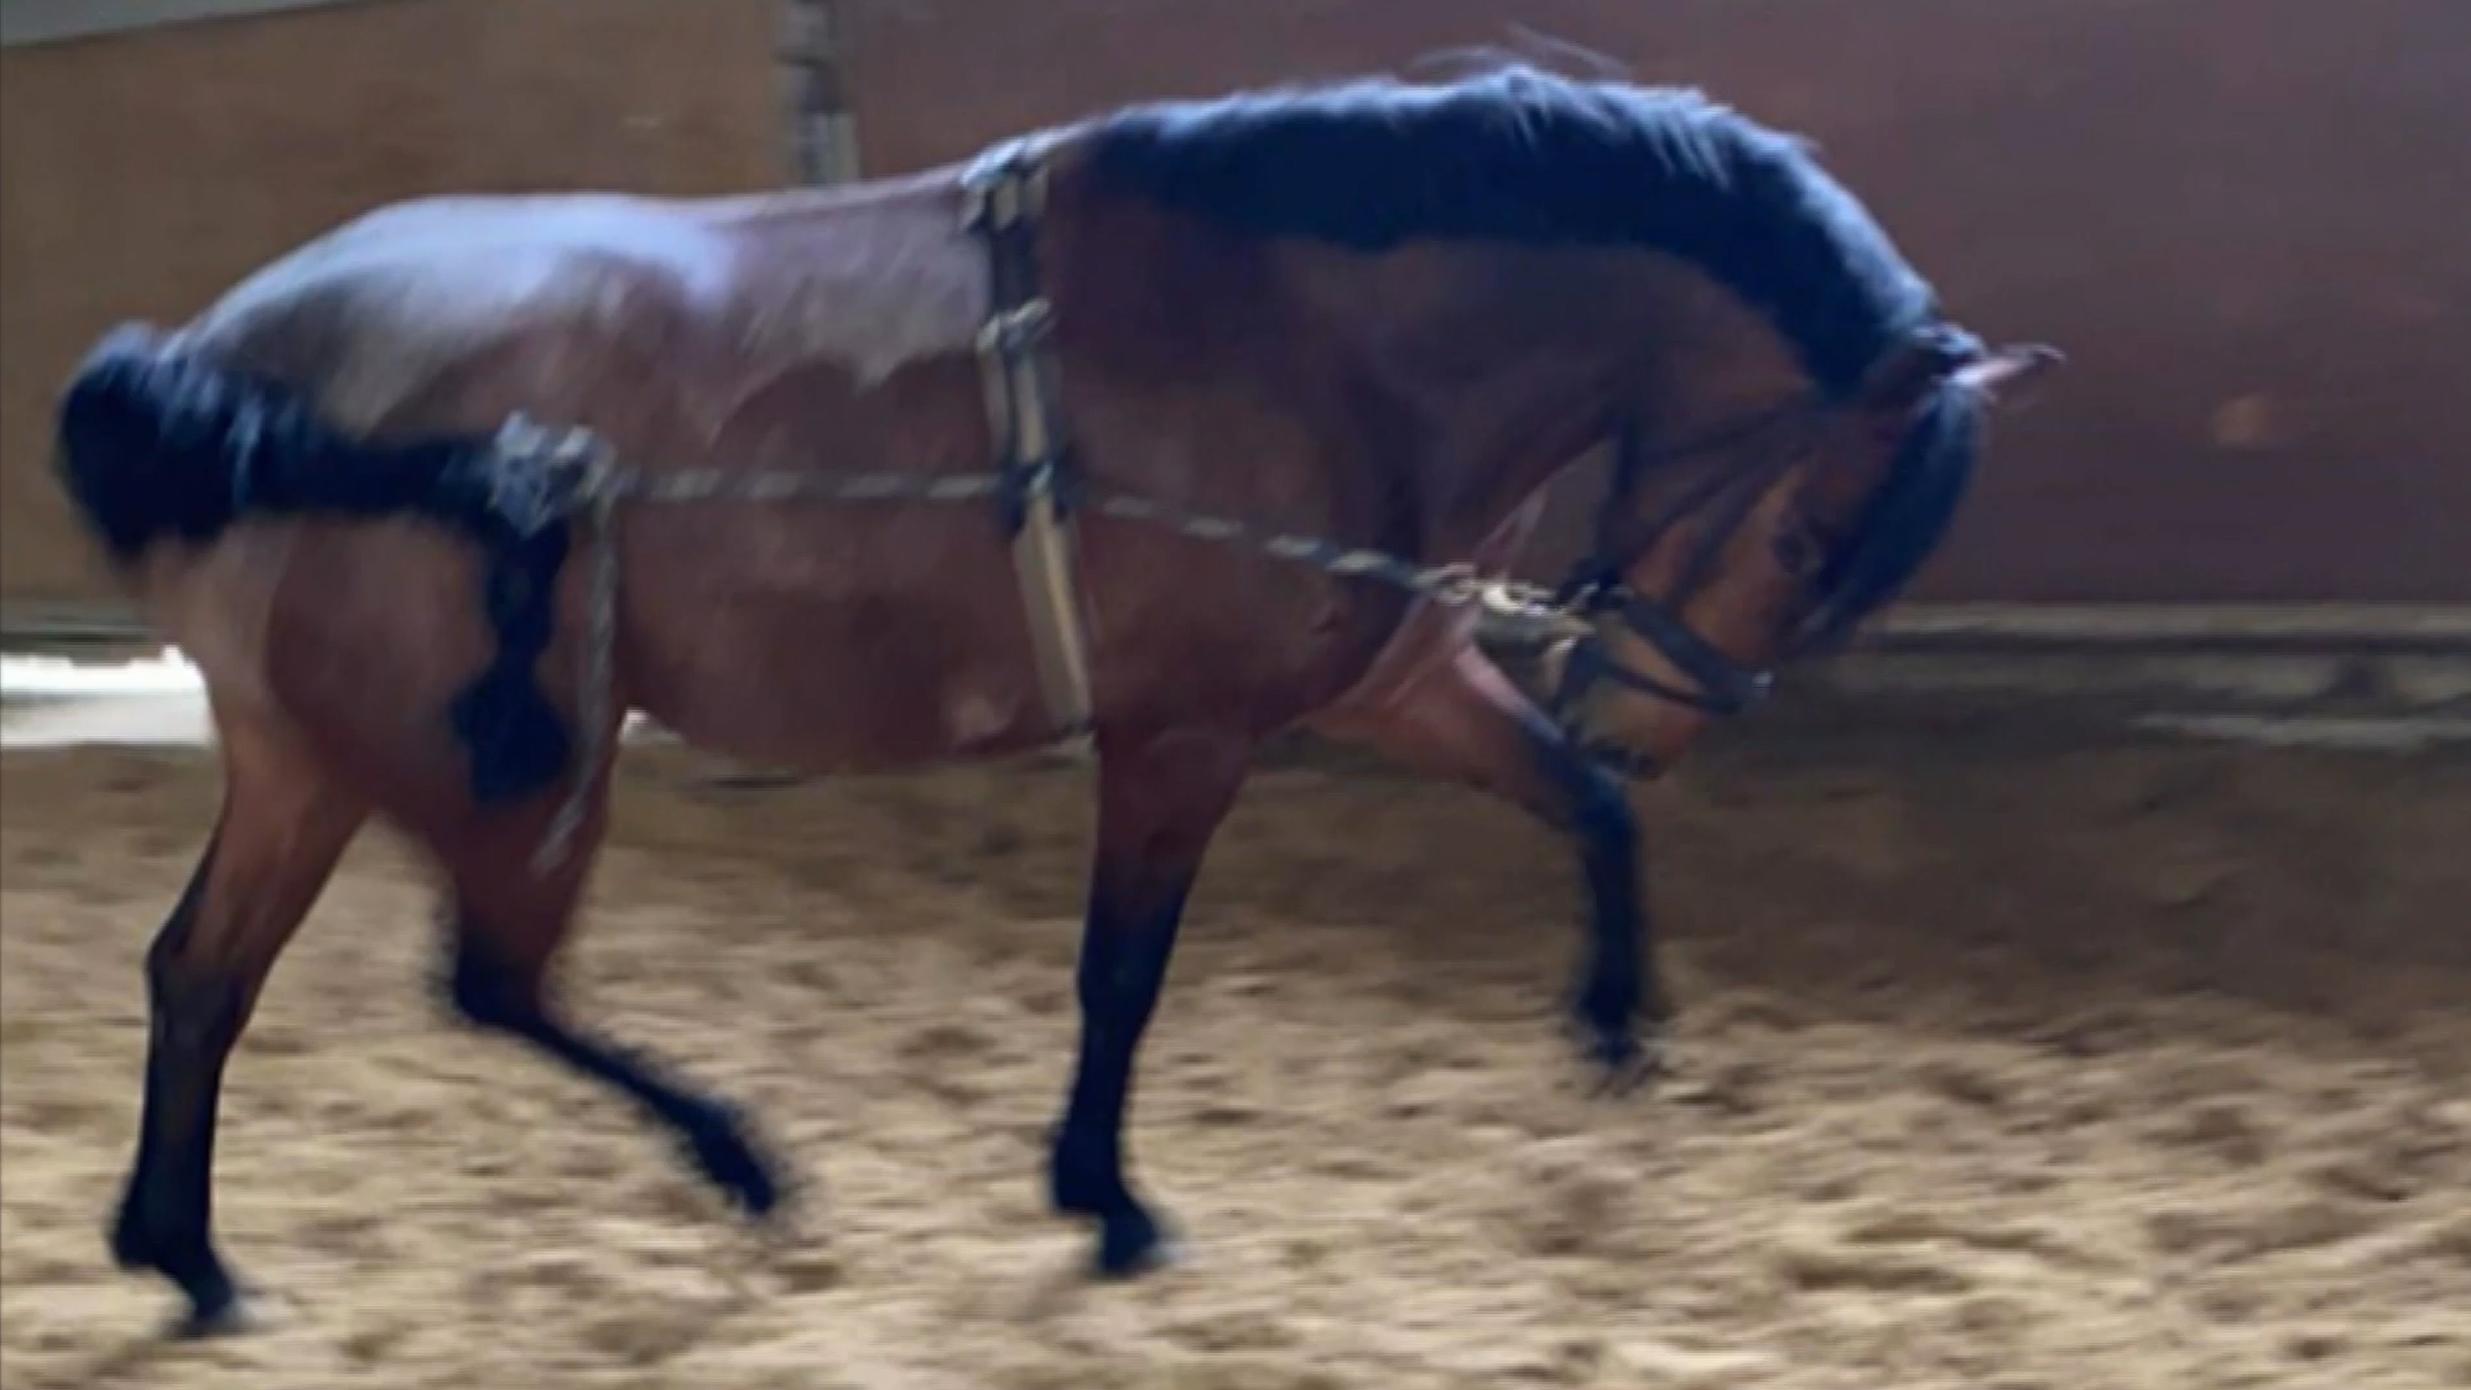 Aufnahmen zeigen, wie ein Pferd an Zügel und Schwanz zusammengebunden herumgescheucht wird.